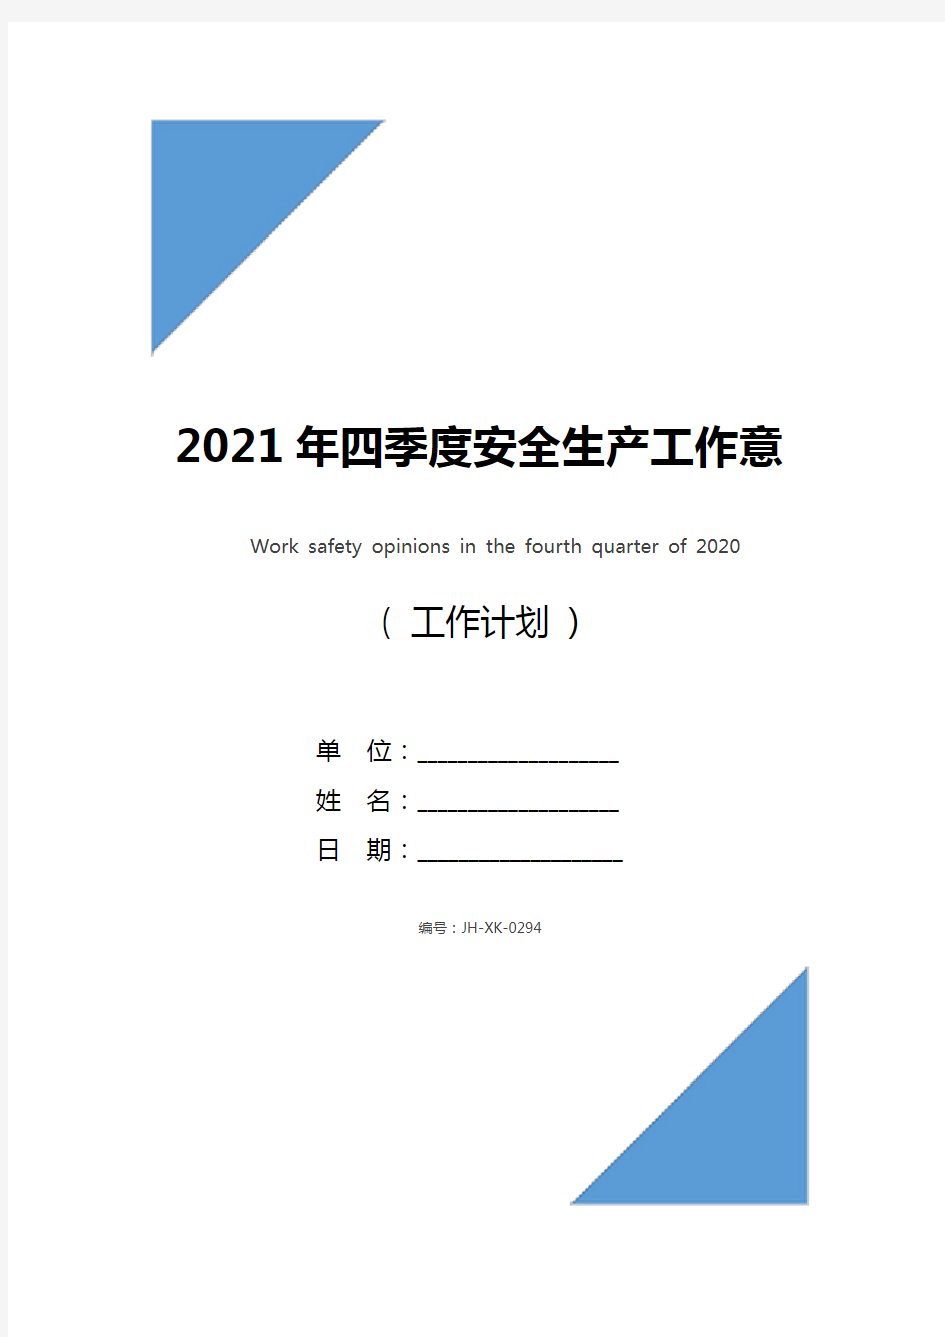 2021年四季度安全生产工作意见(最新版)